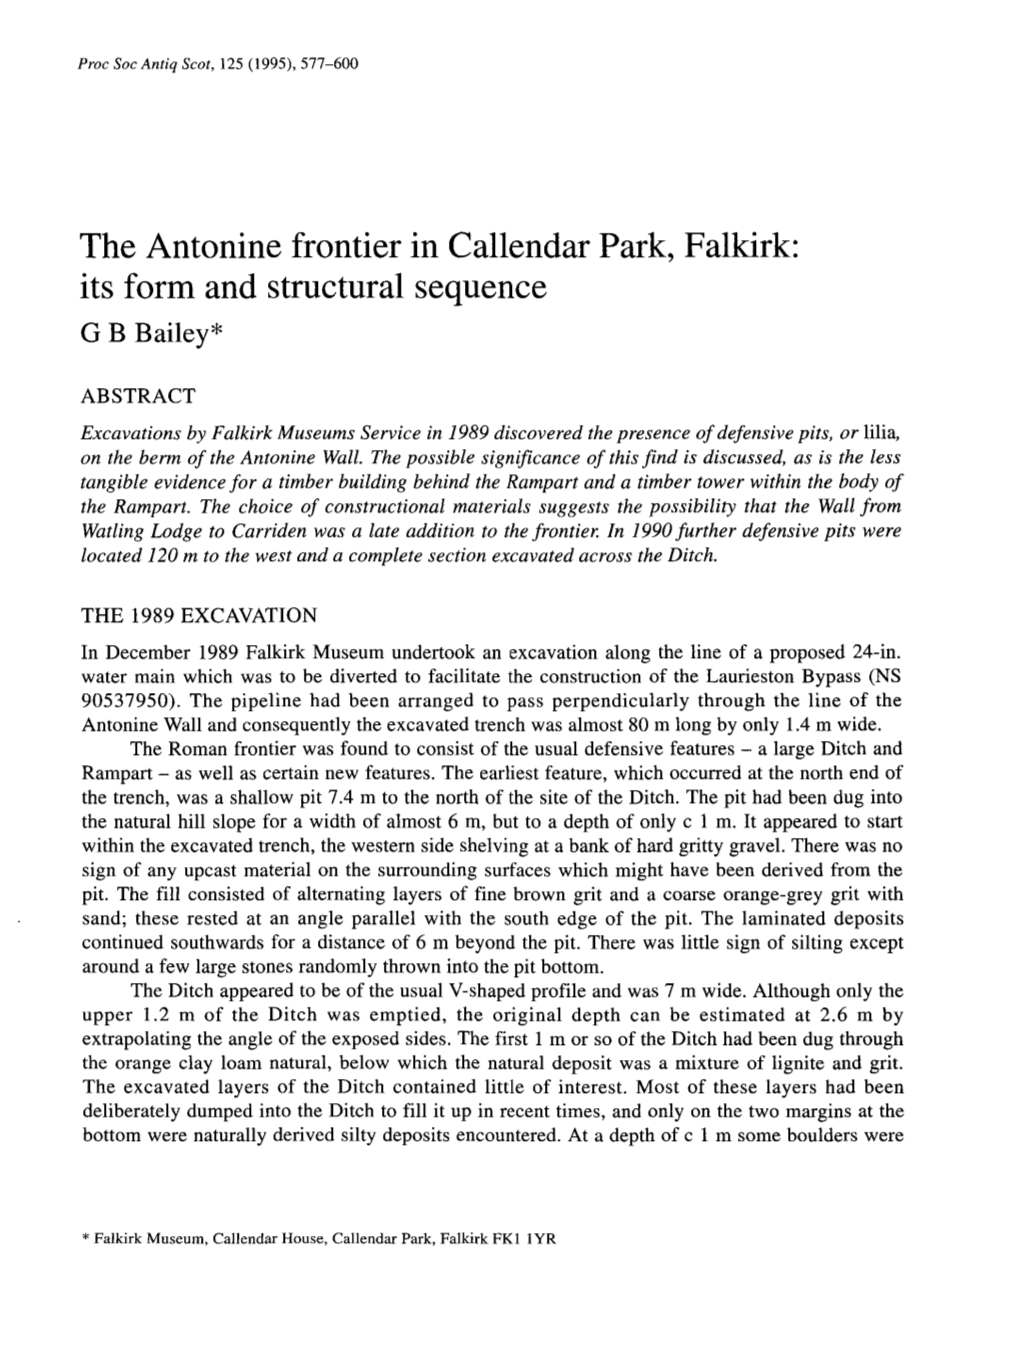 The Antonine Frontier in Callendar Park, Falkirk